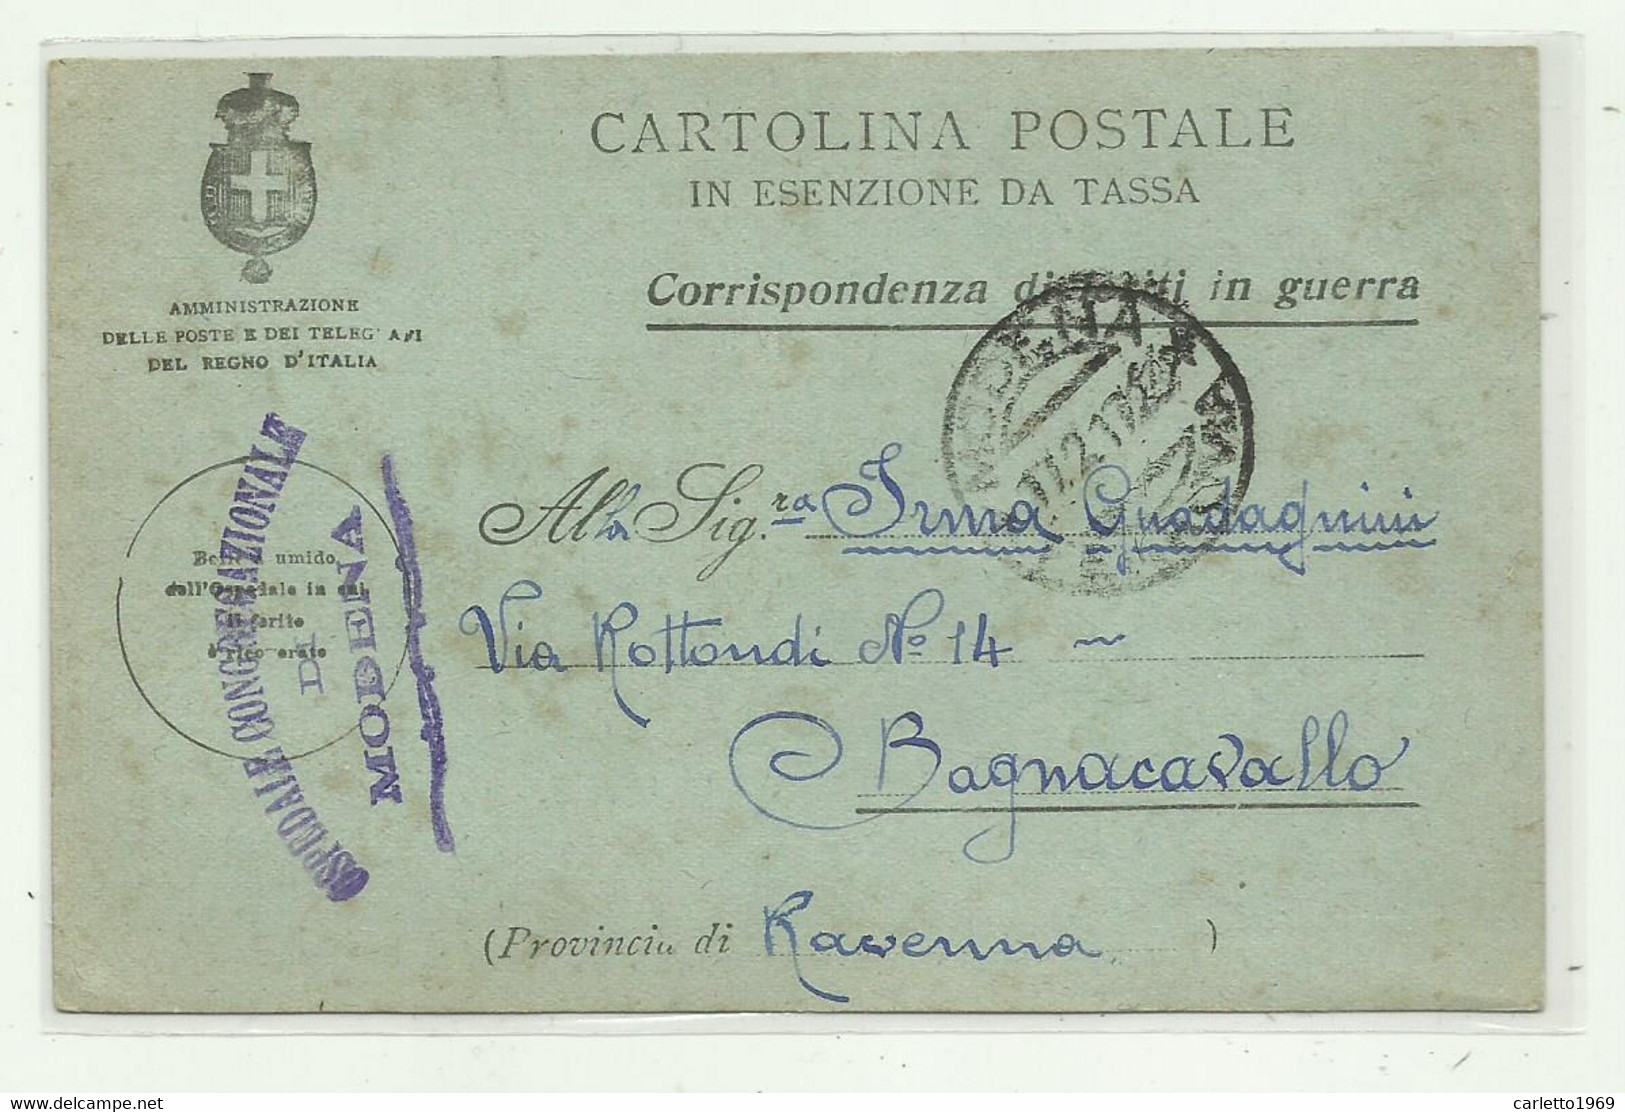 CARTOLINA POSTALE - CORRISPONDENZA DI FERITI IN GUERRA - OSPEDALE CONGREGAZIONALE MODENA 1917 - Franchigia